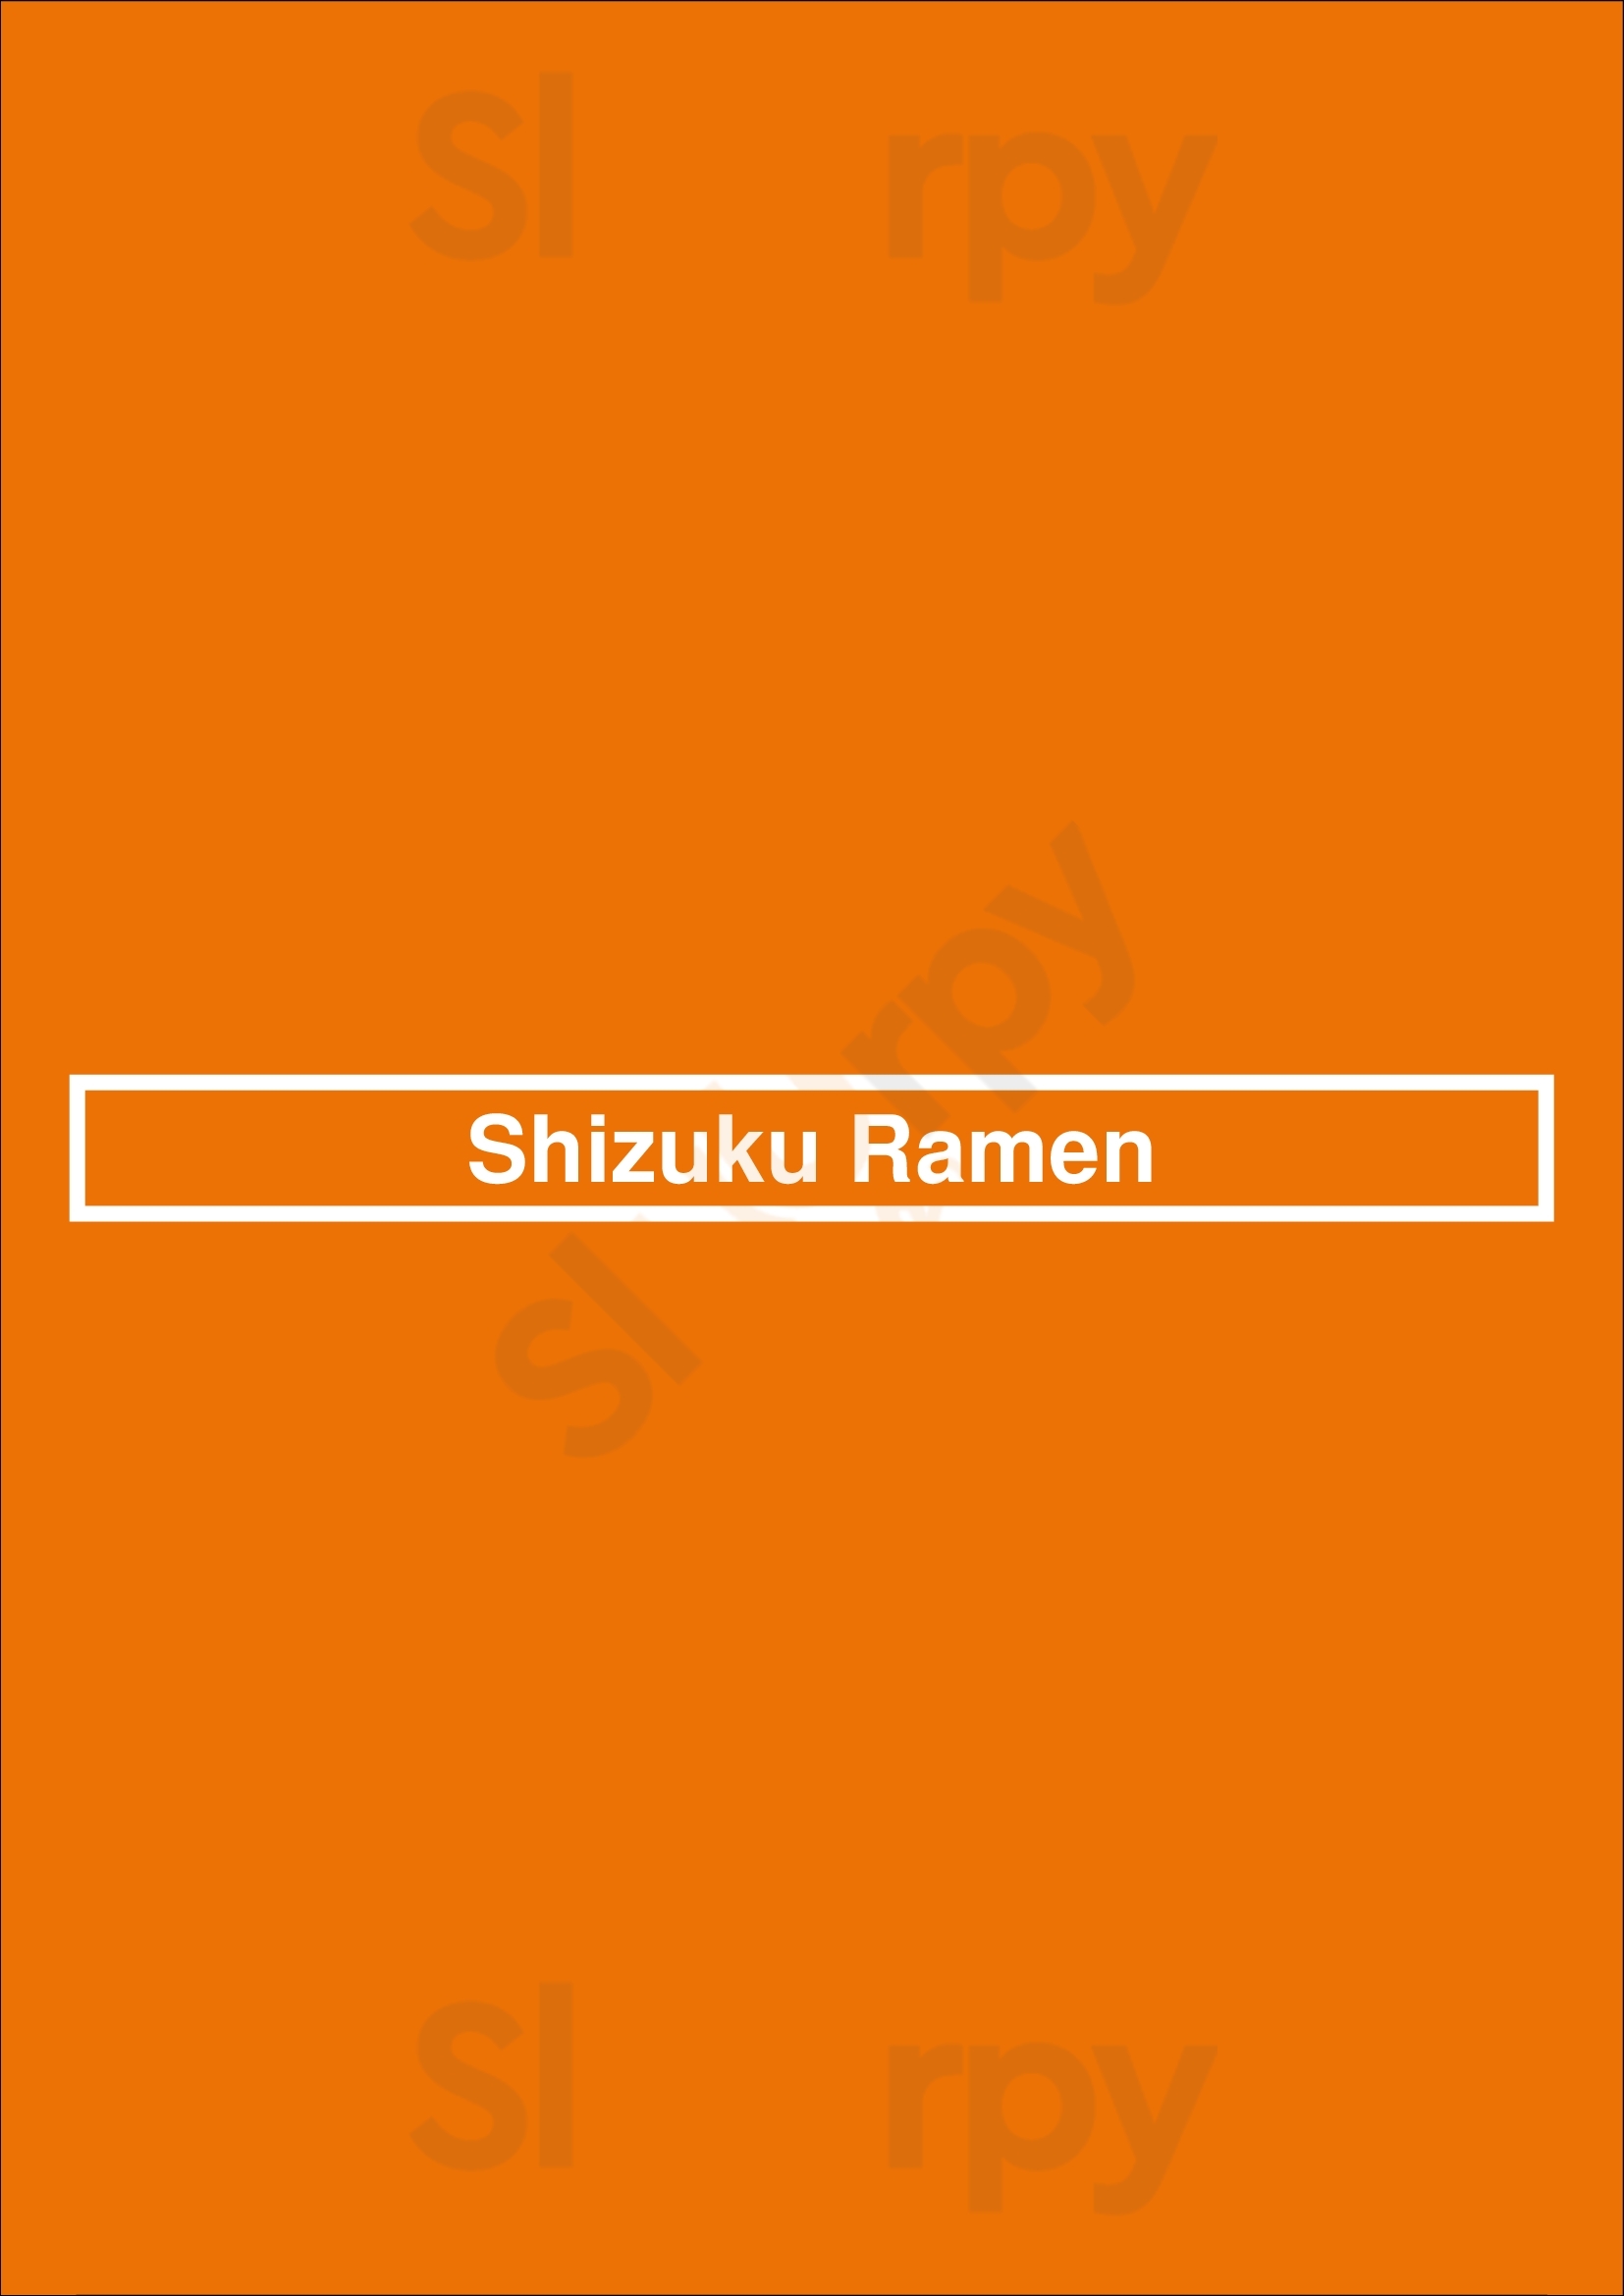 Shizuku Ramen Abbotsford Menu - 1